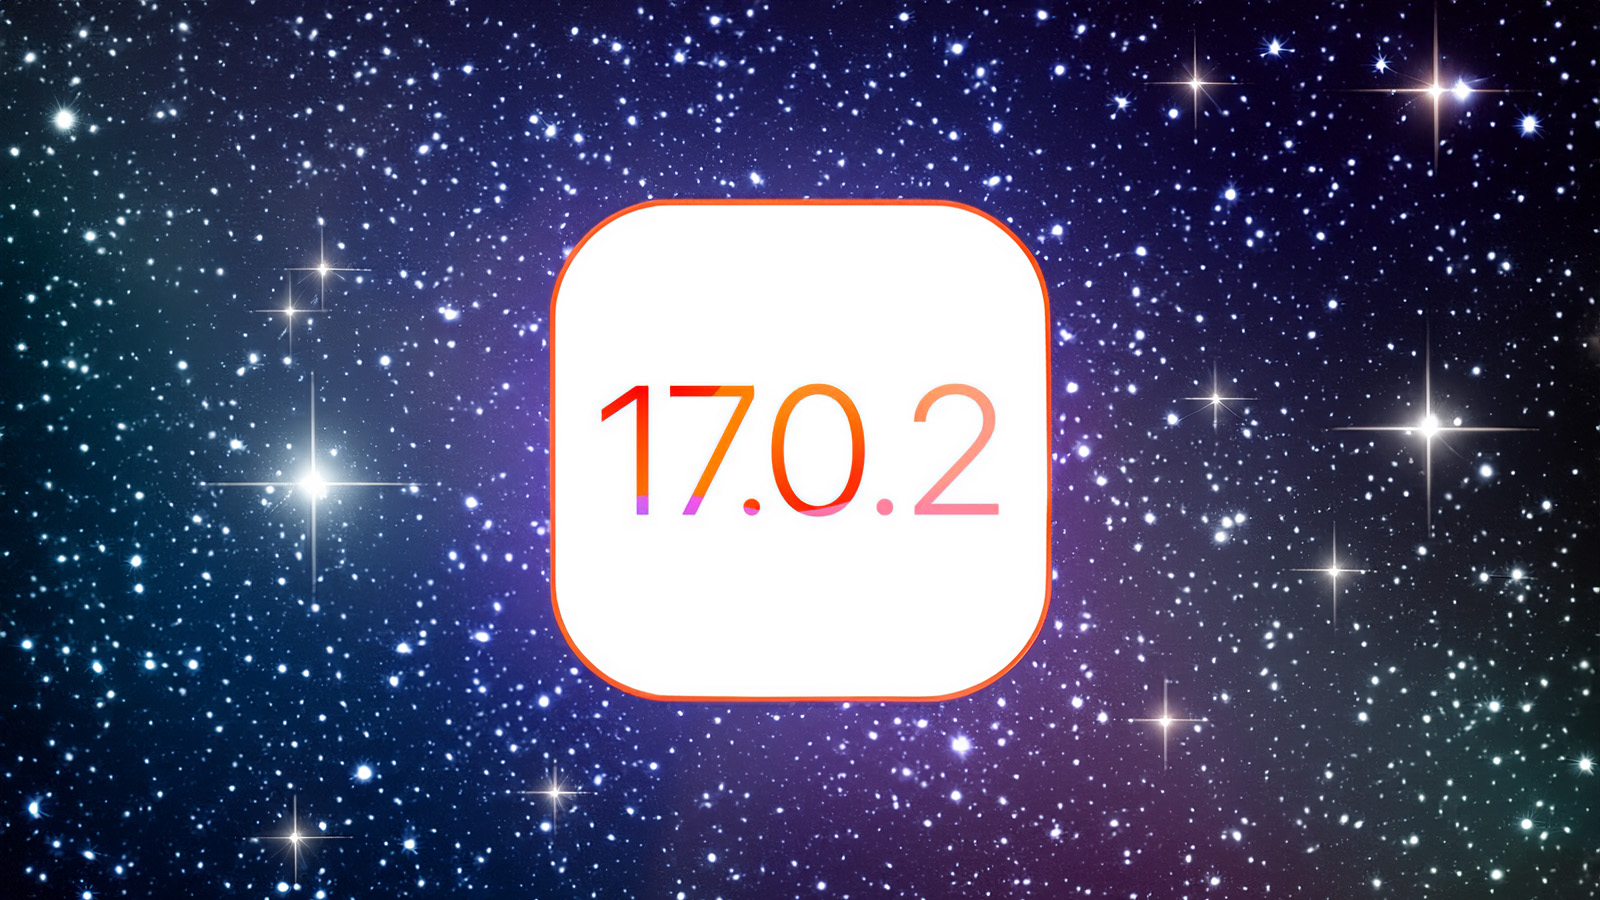 Depuis iPhoneIslam.com, fond d'écran étoilé avec le texte 17 7 2 avec Apple et iOS.